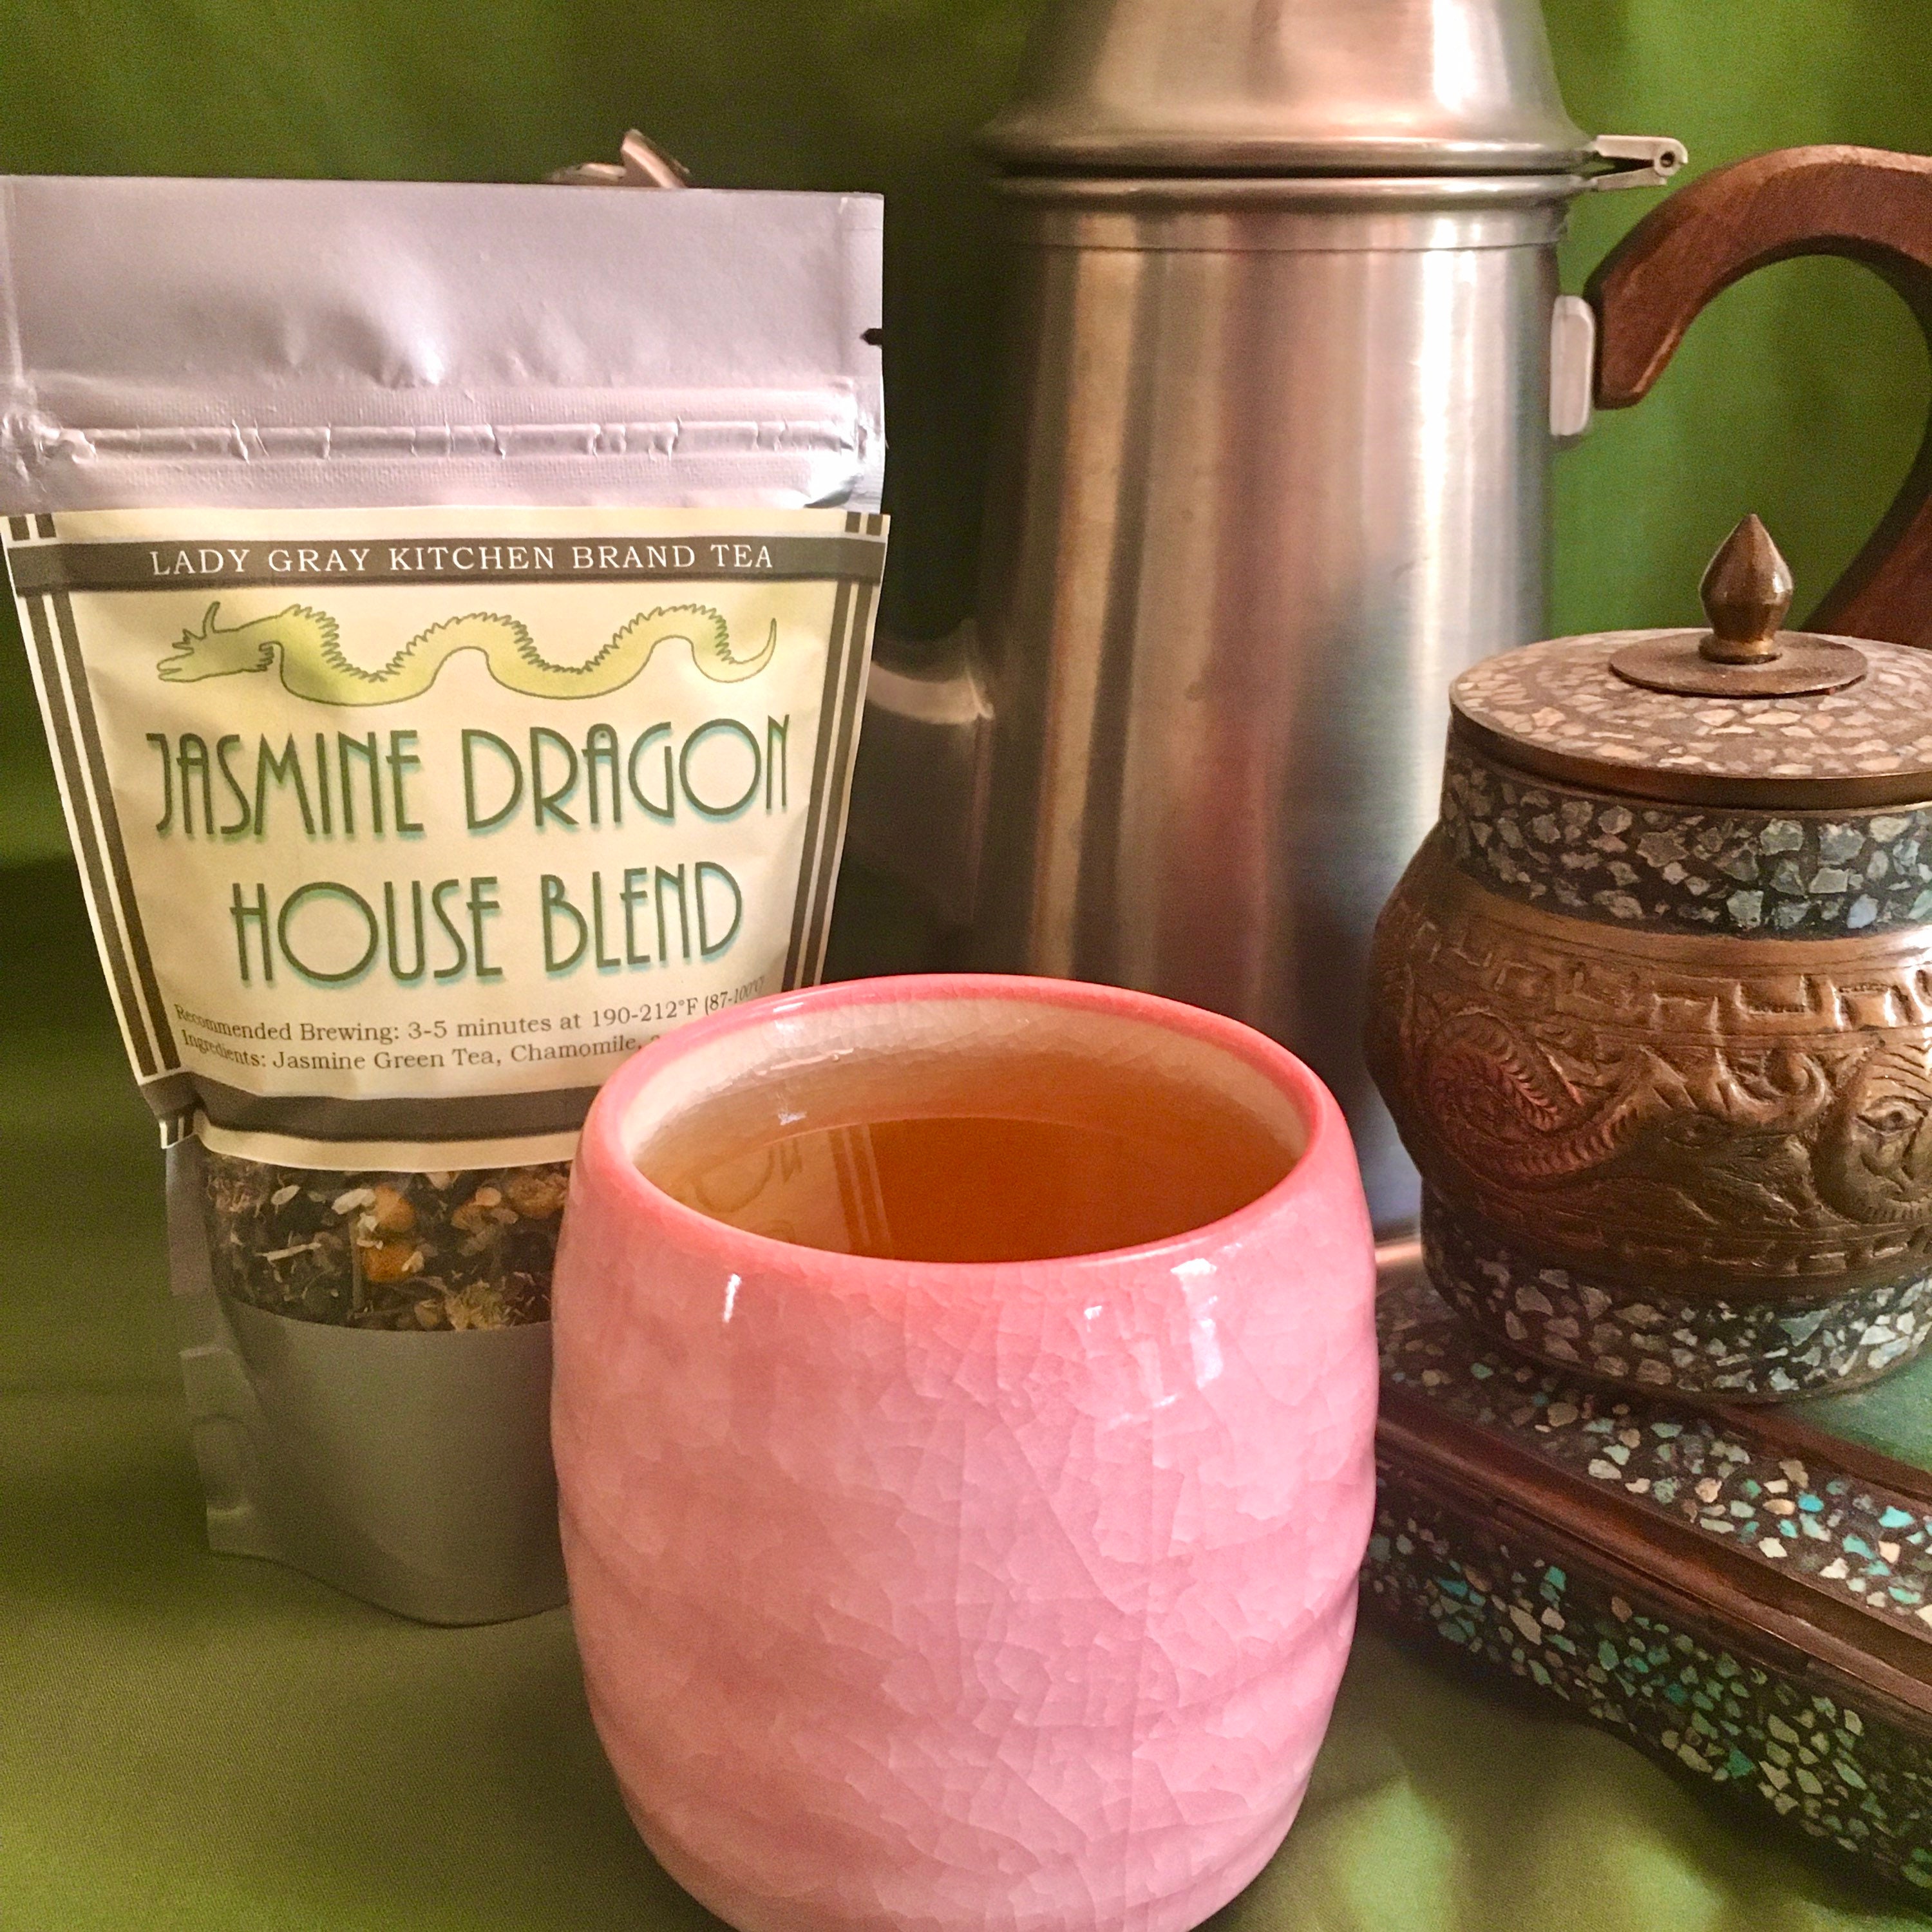 Jasmine Dragon House Blend Loose Leaf Tea